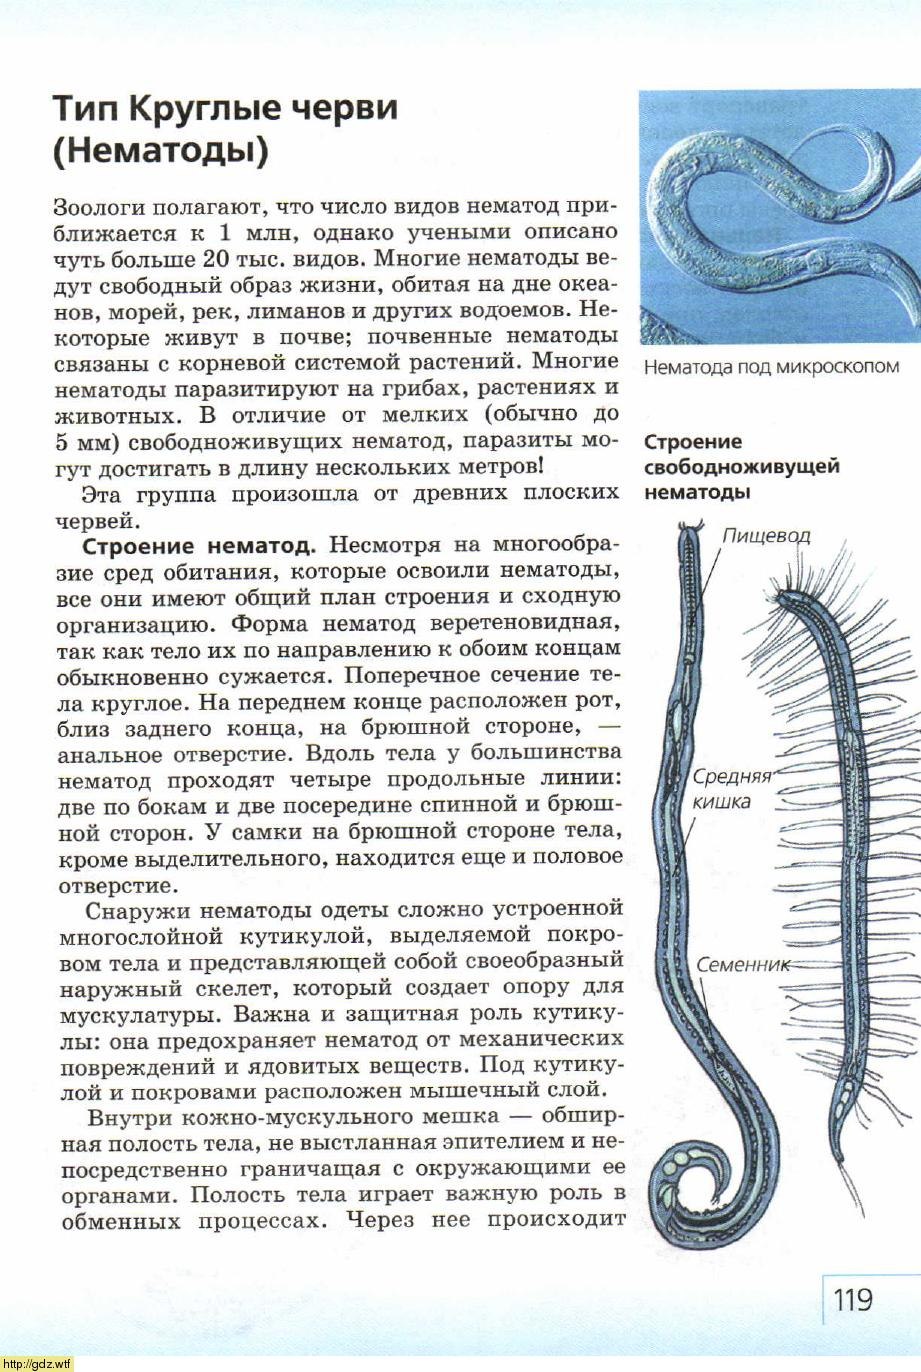 Дайте характеристику типа круглые черви. Тип круглые черви нематоды 7 класс. Круглые черви строение 7 класс биология. Тип круглые черви класс нематоды 7 класс. Круглые черви нематоды половая система.